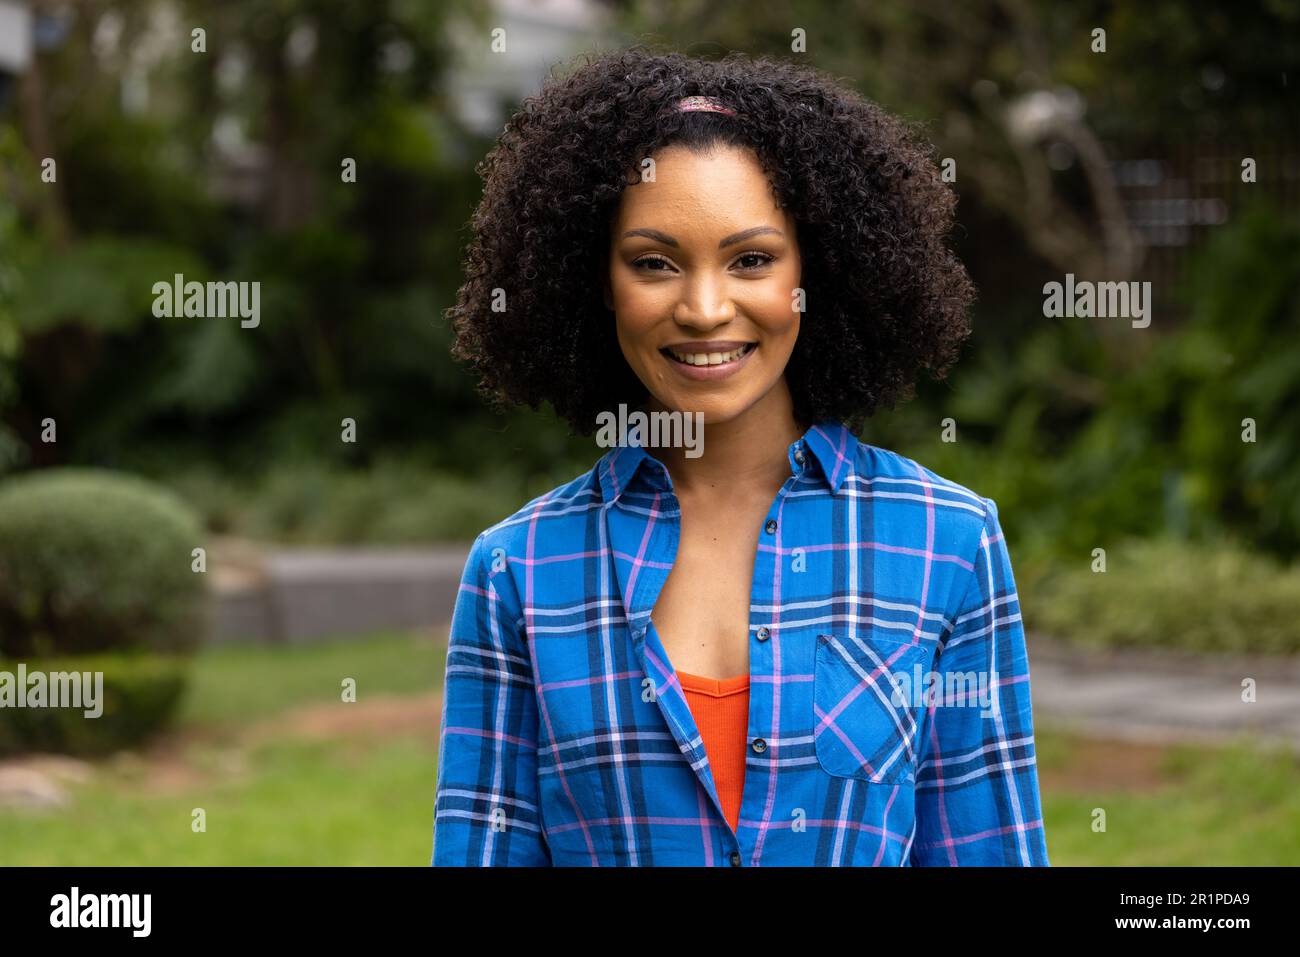 Porträt einer glücklichen afroamerikanischen Frau, die ein kariertes Hemd trägt und im Garten lächelt Stockfoto